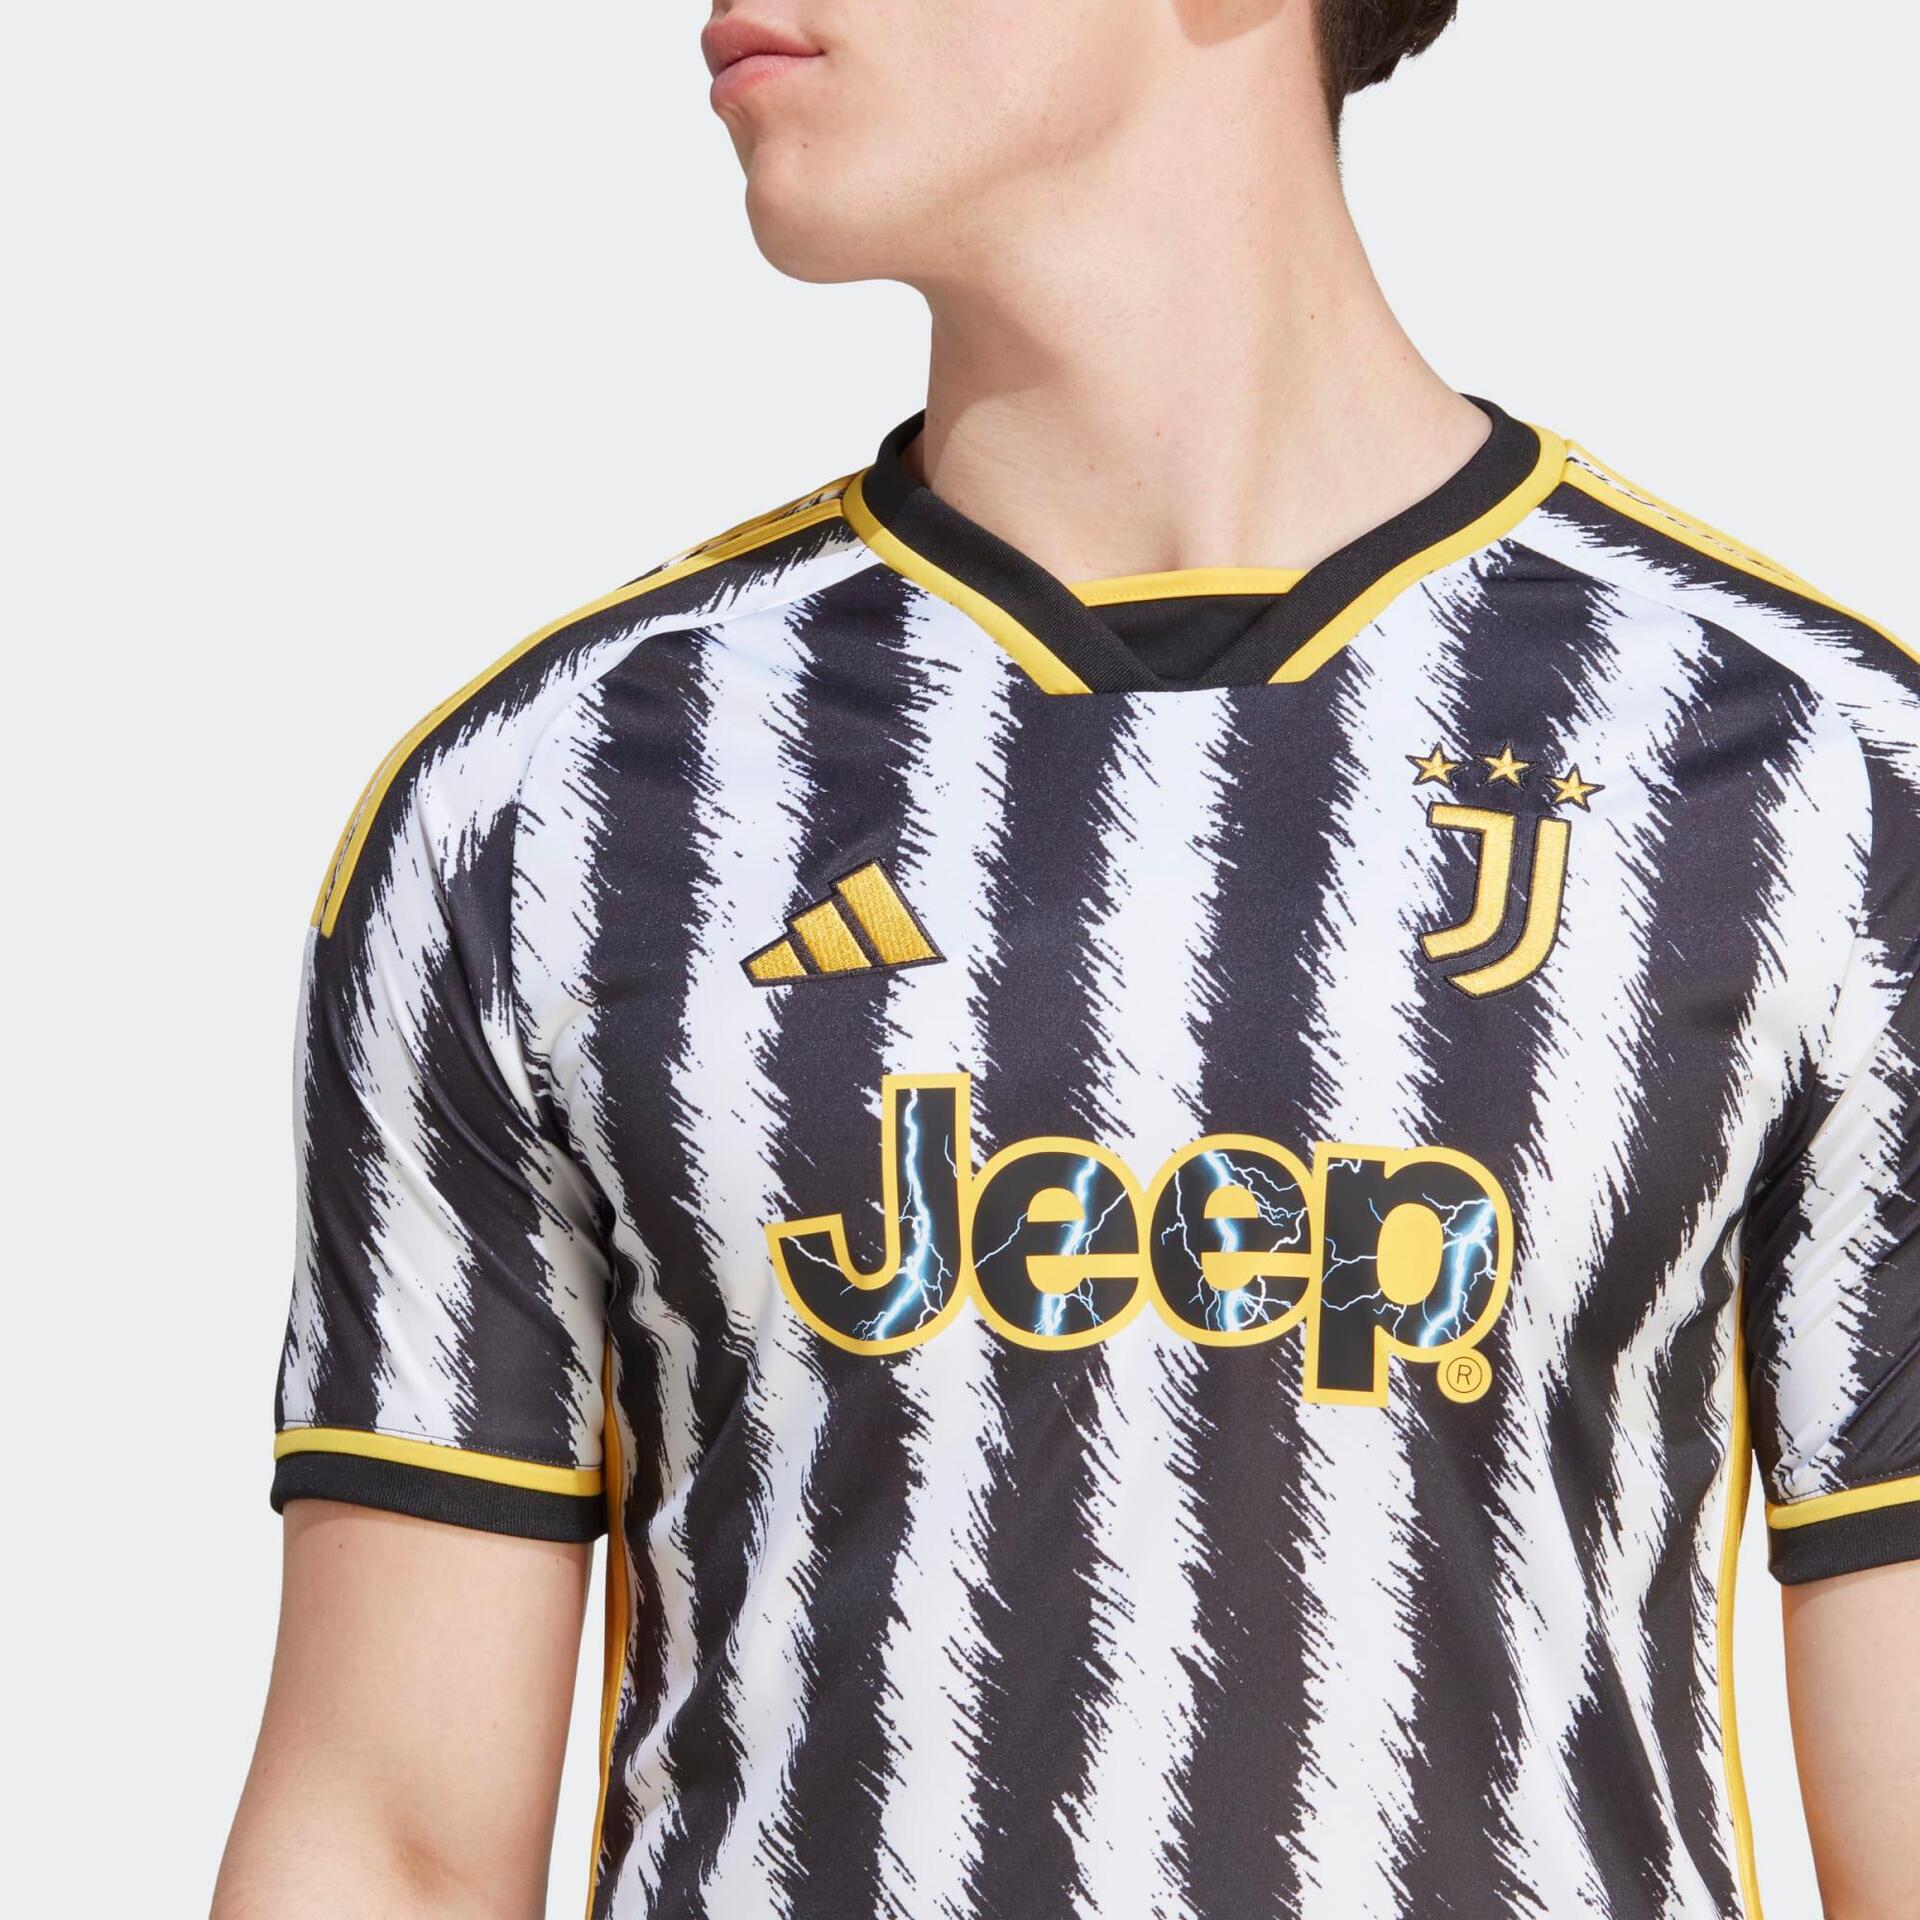 Adidas Juventus voetbalshirt voor spelers en fans